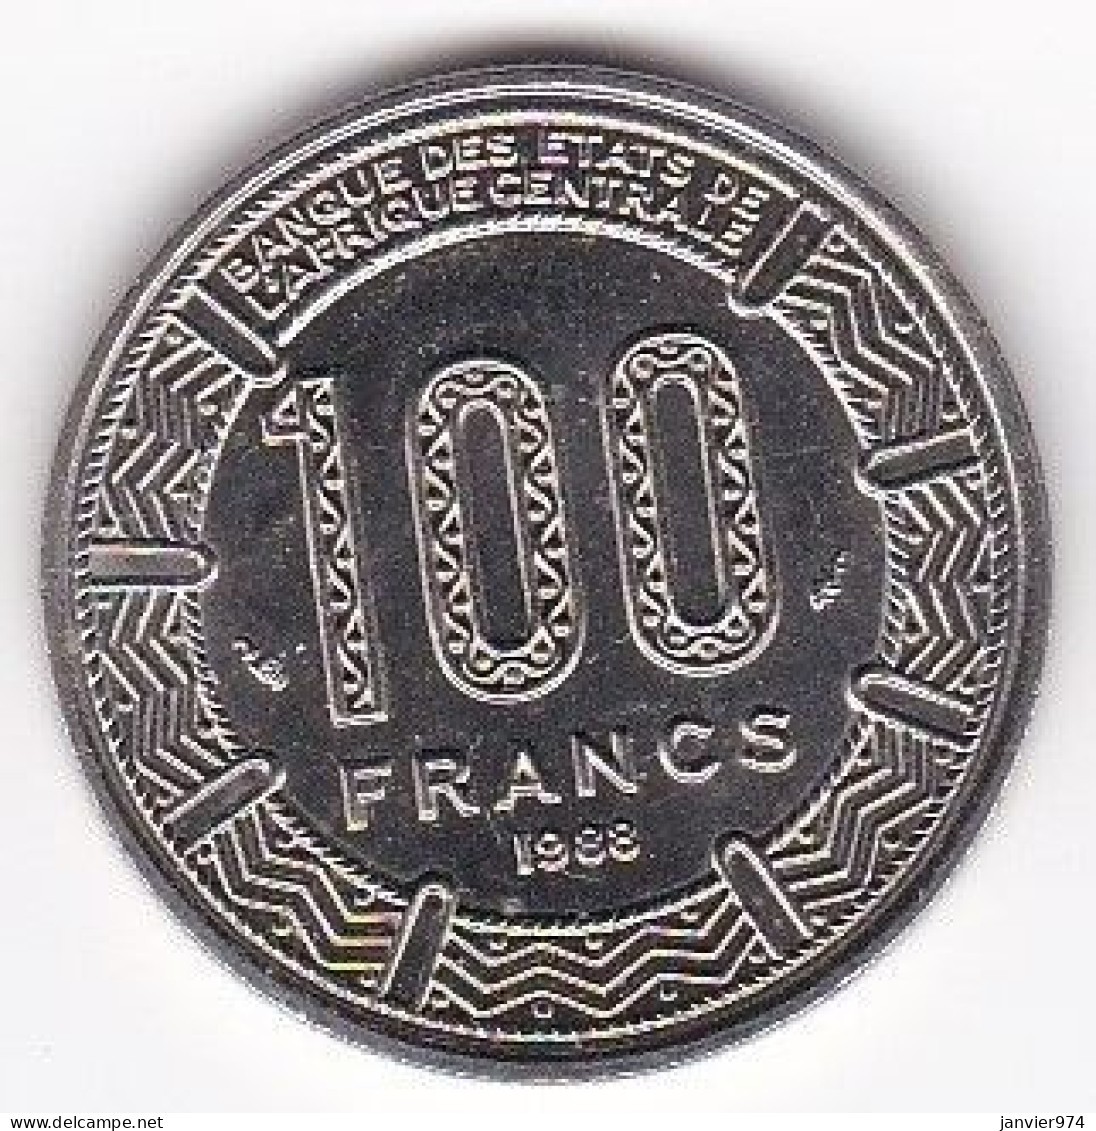 République Du Tchad 100 Francs 1988, En Nickel , KM# 3, UNC/ Neuve - Chad